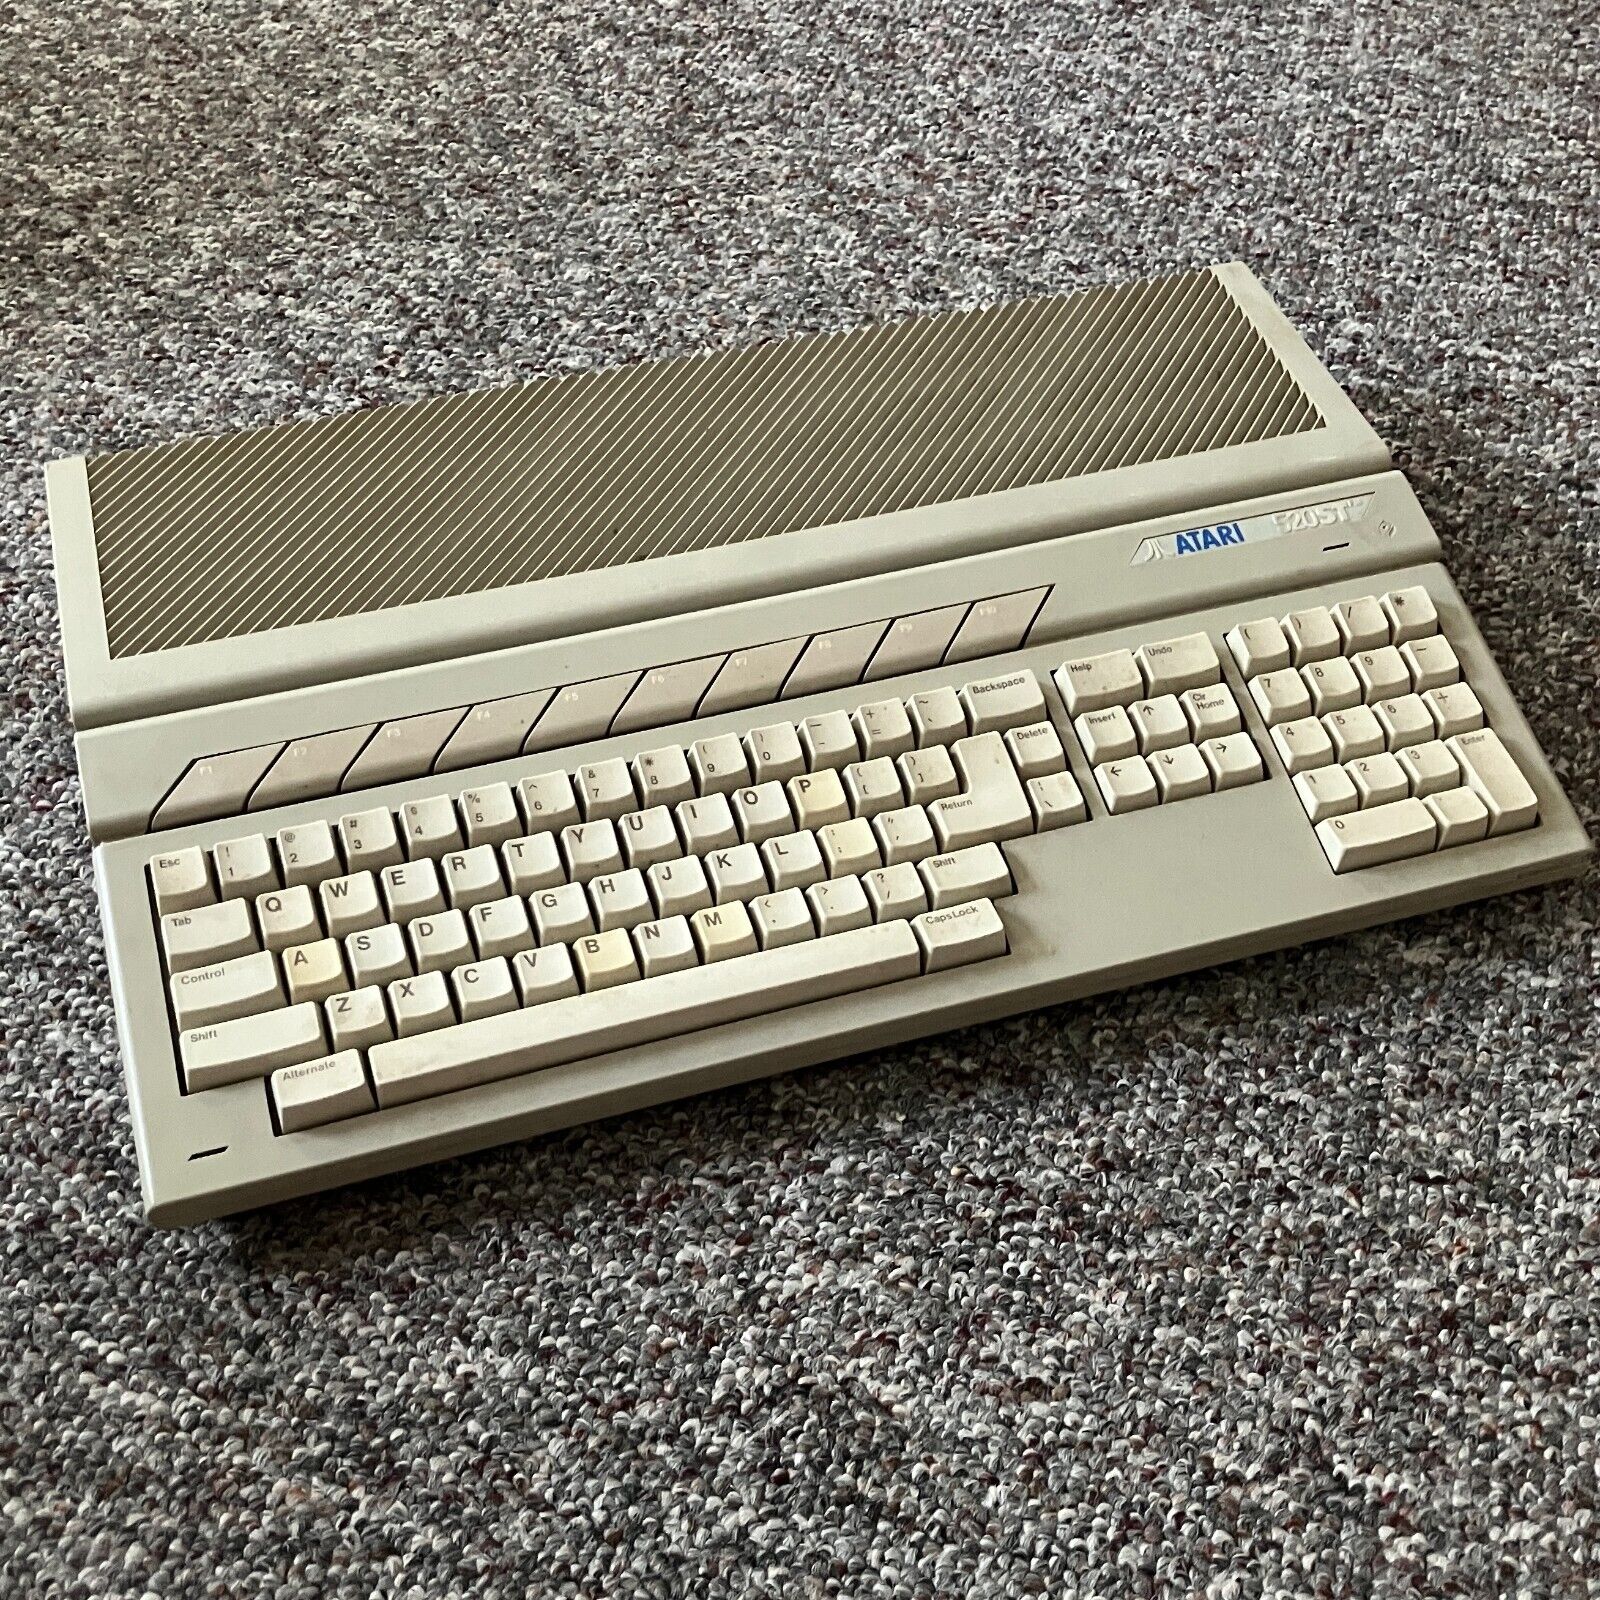 Atari 520 ST/STFM Vintage Computer